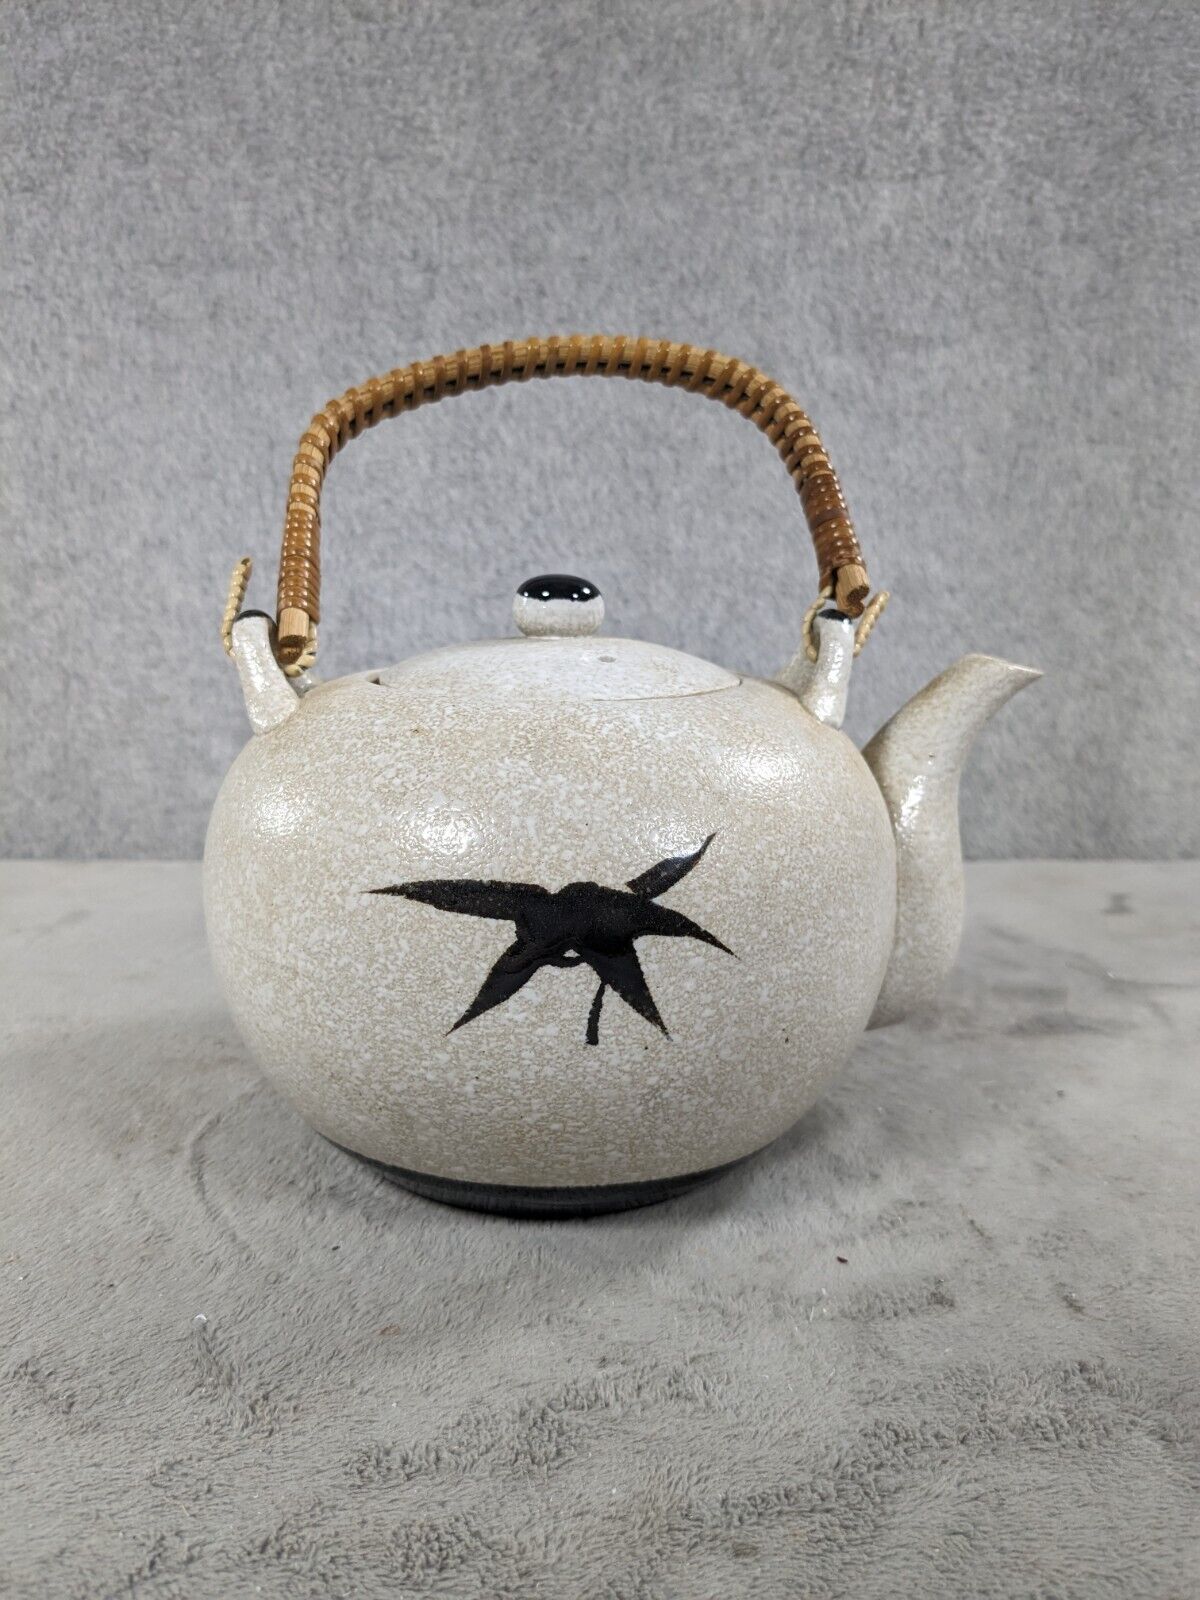 Vintage Ceramic Teapot from Japan Flower Design 5\